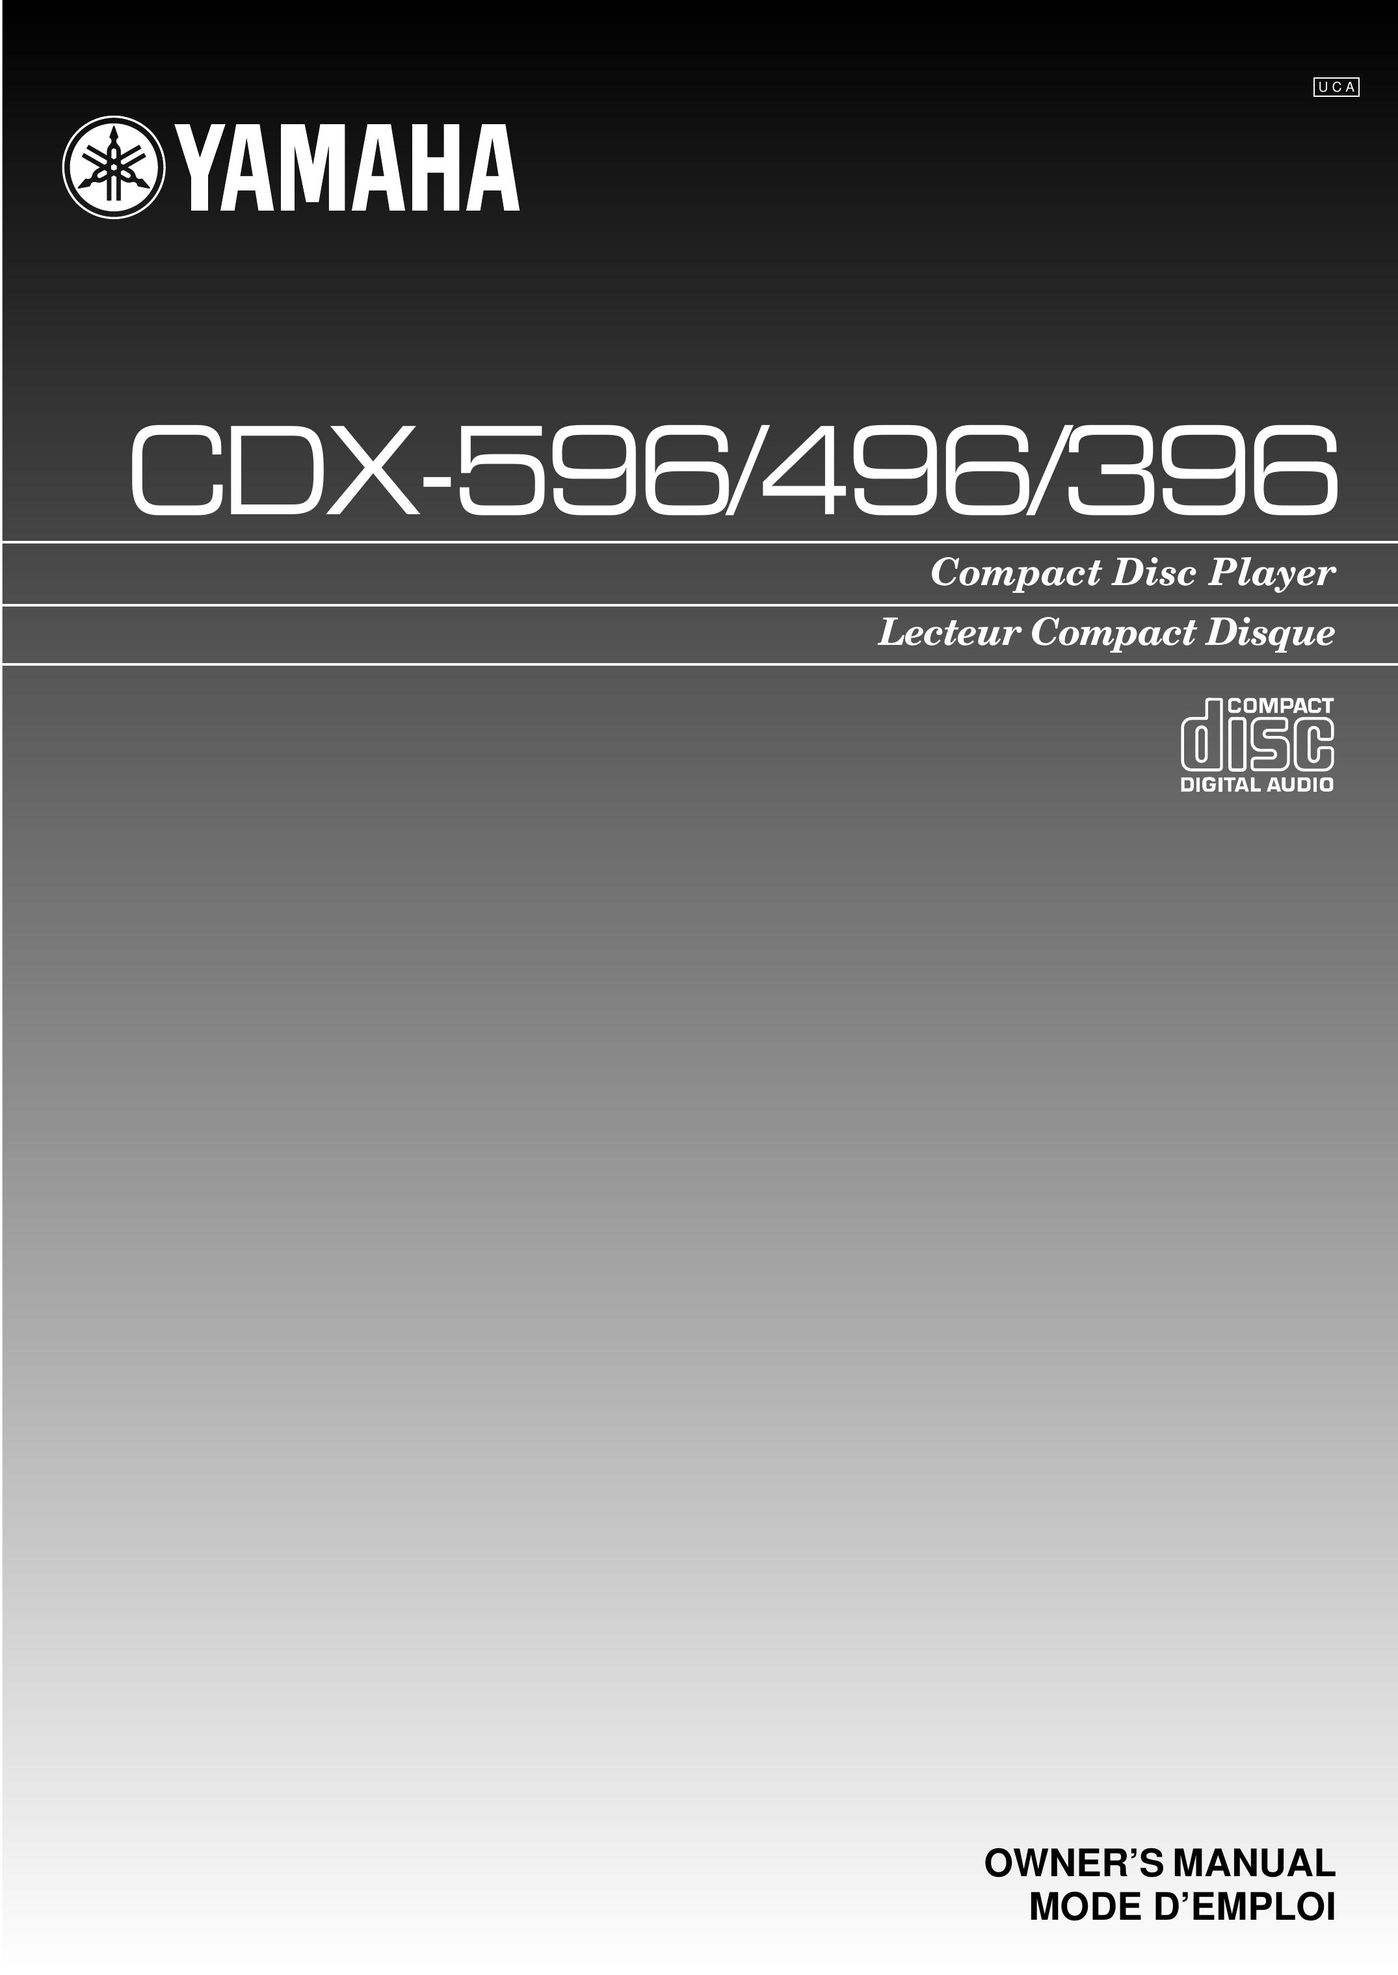 Yamaha CDX-496 CD Player User Manual